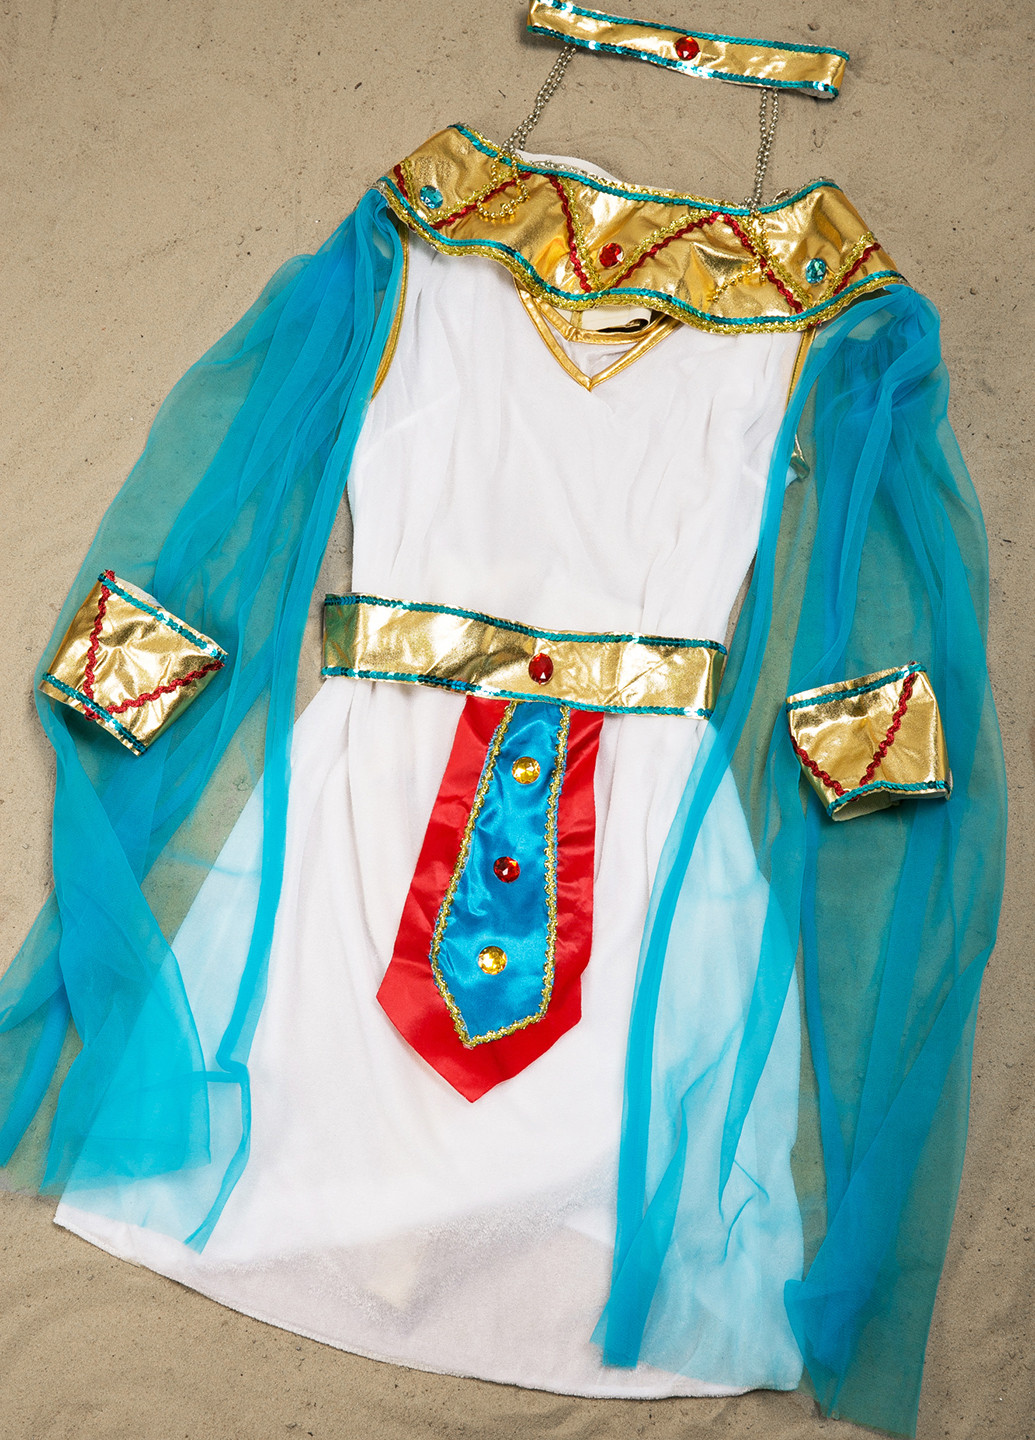 Маскарадный костюм Египтянка La Mascarade (109391839)